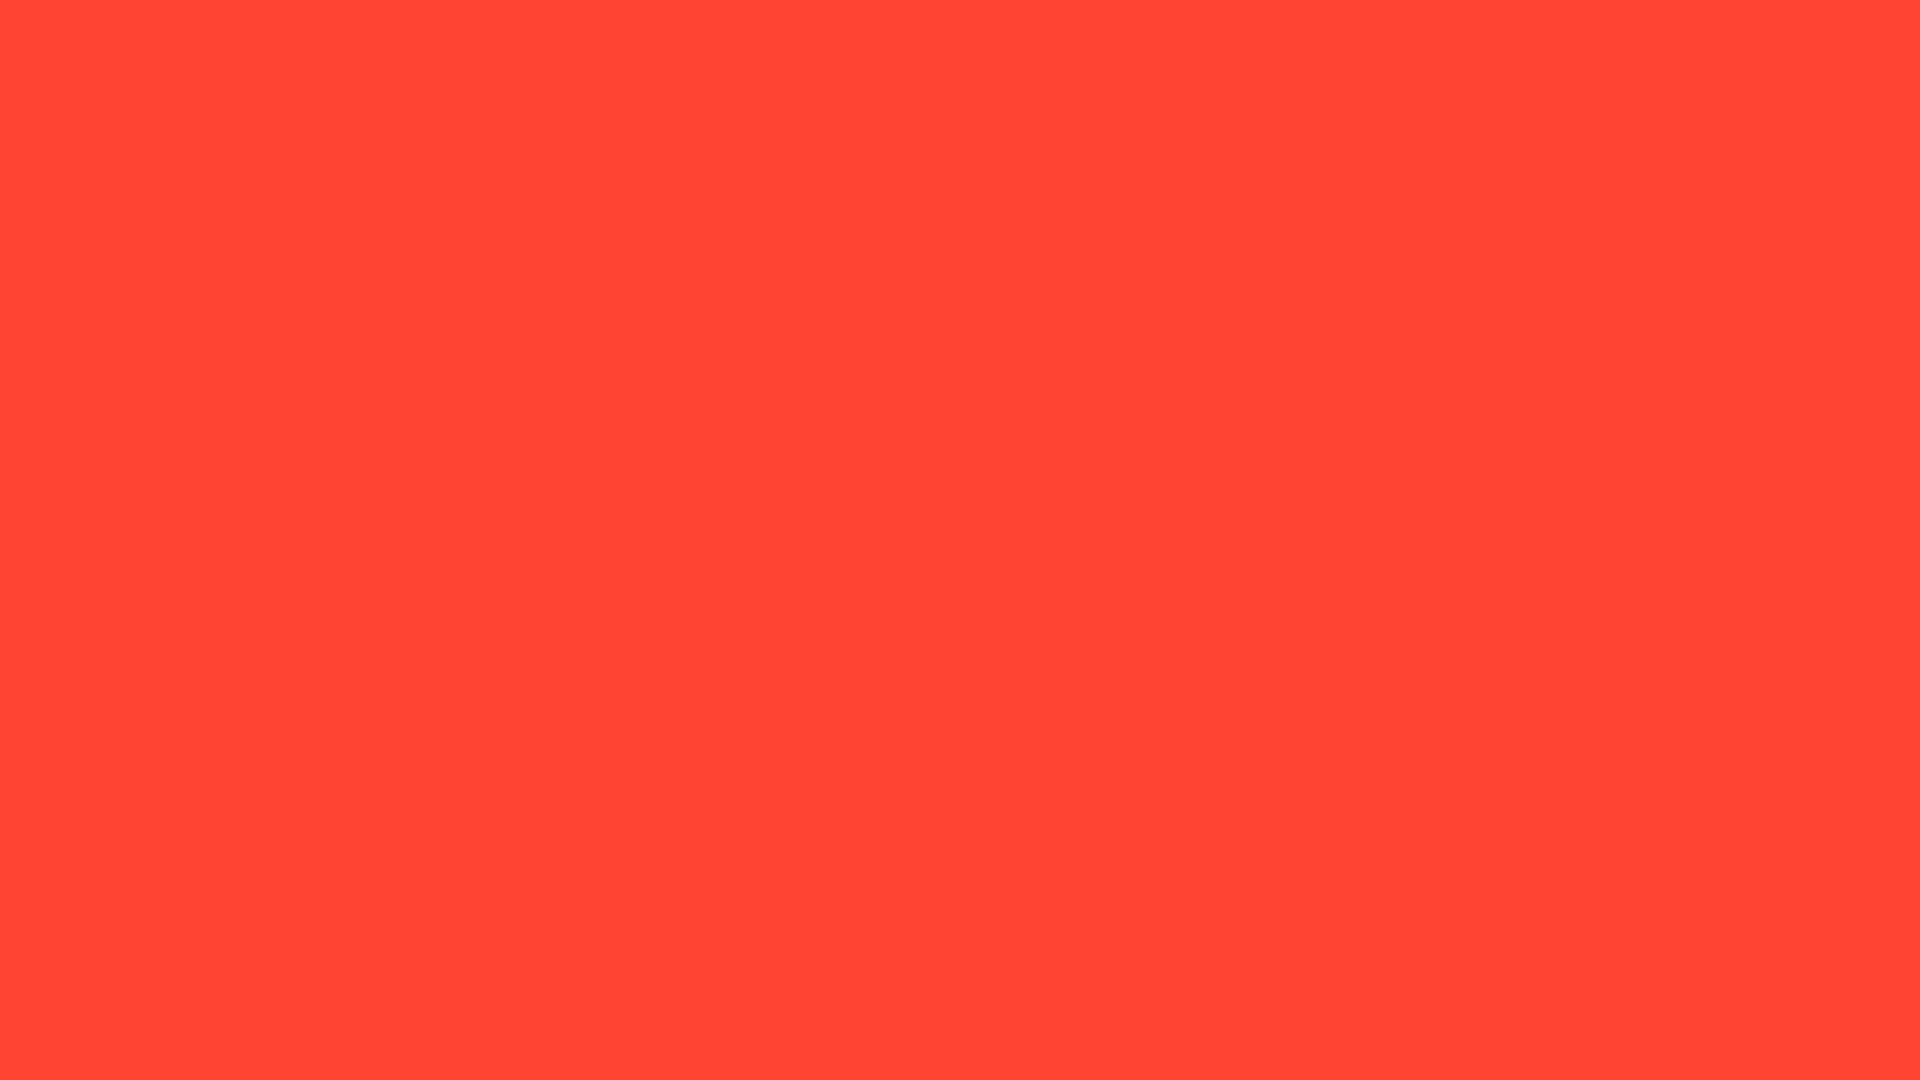 Màu đỏ cam là biểu tượng của sức mạnh, đam mê, và năng lượng tích cực. Bạn có biết rằng màu đỏ cam còn có mọi mã màu HTML để bạn dễ dàng sử dụng? Hãy xem ngay cách sử dụng màu đỏ cam trong thiết kế của bạn để tạo ra sự ấn tượng mạnh mẽ.